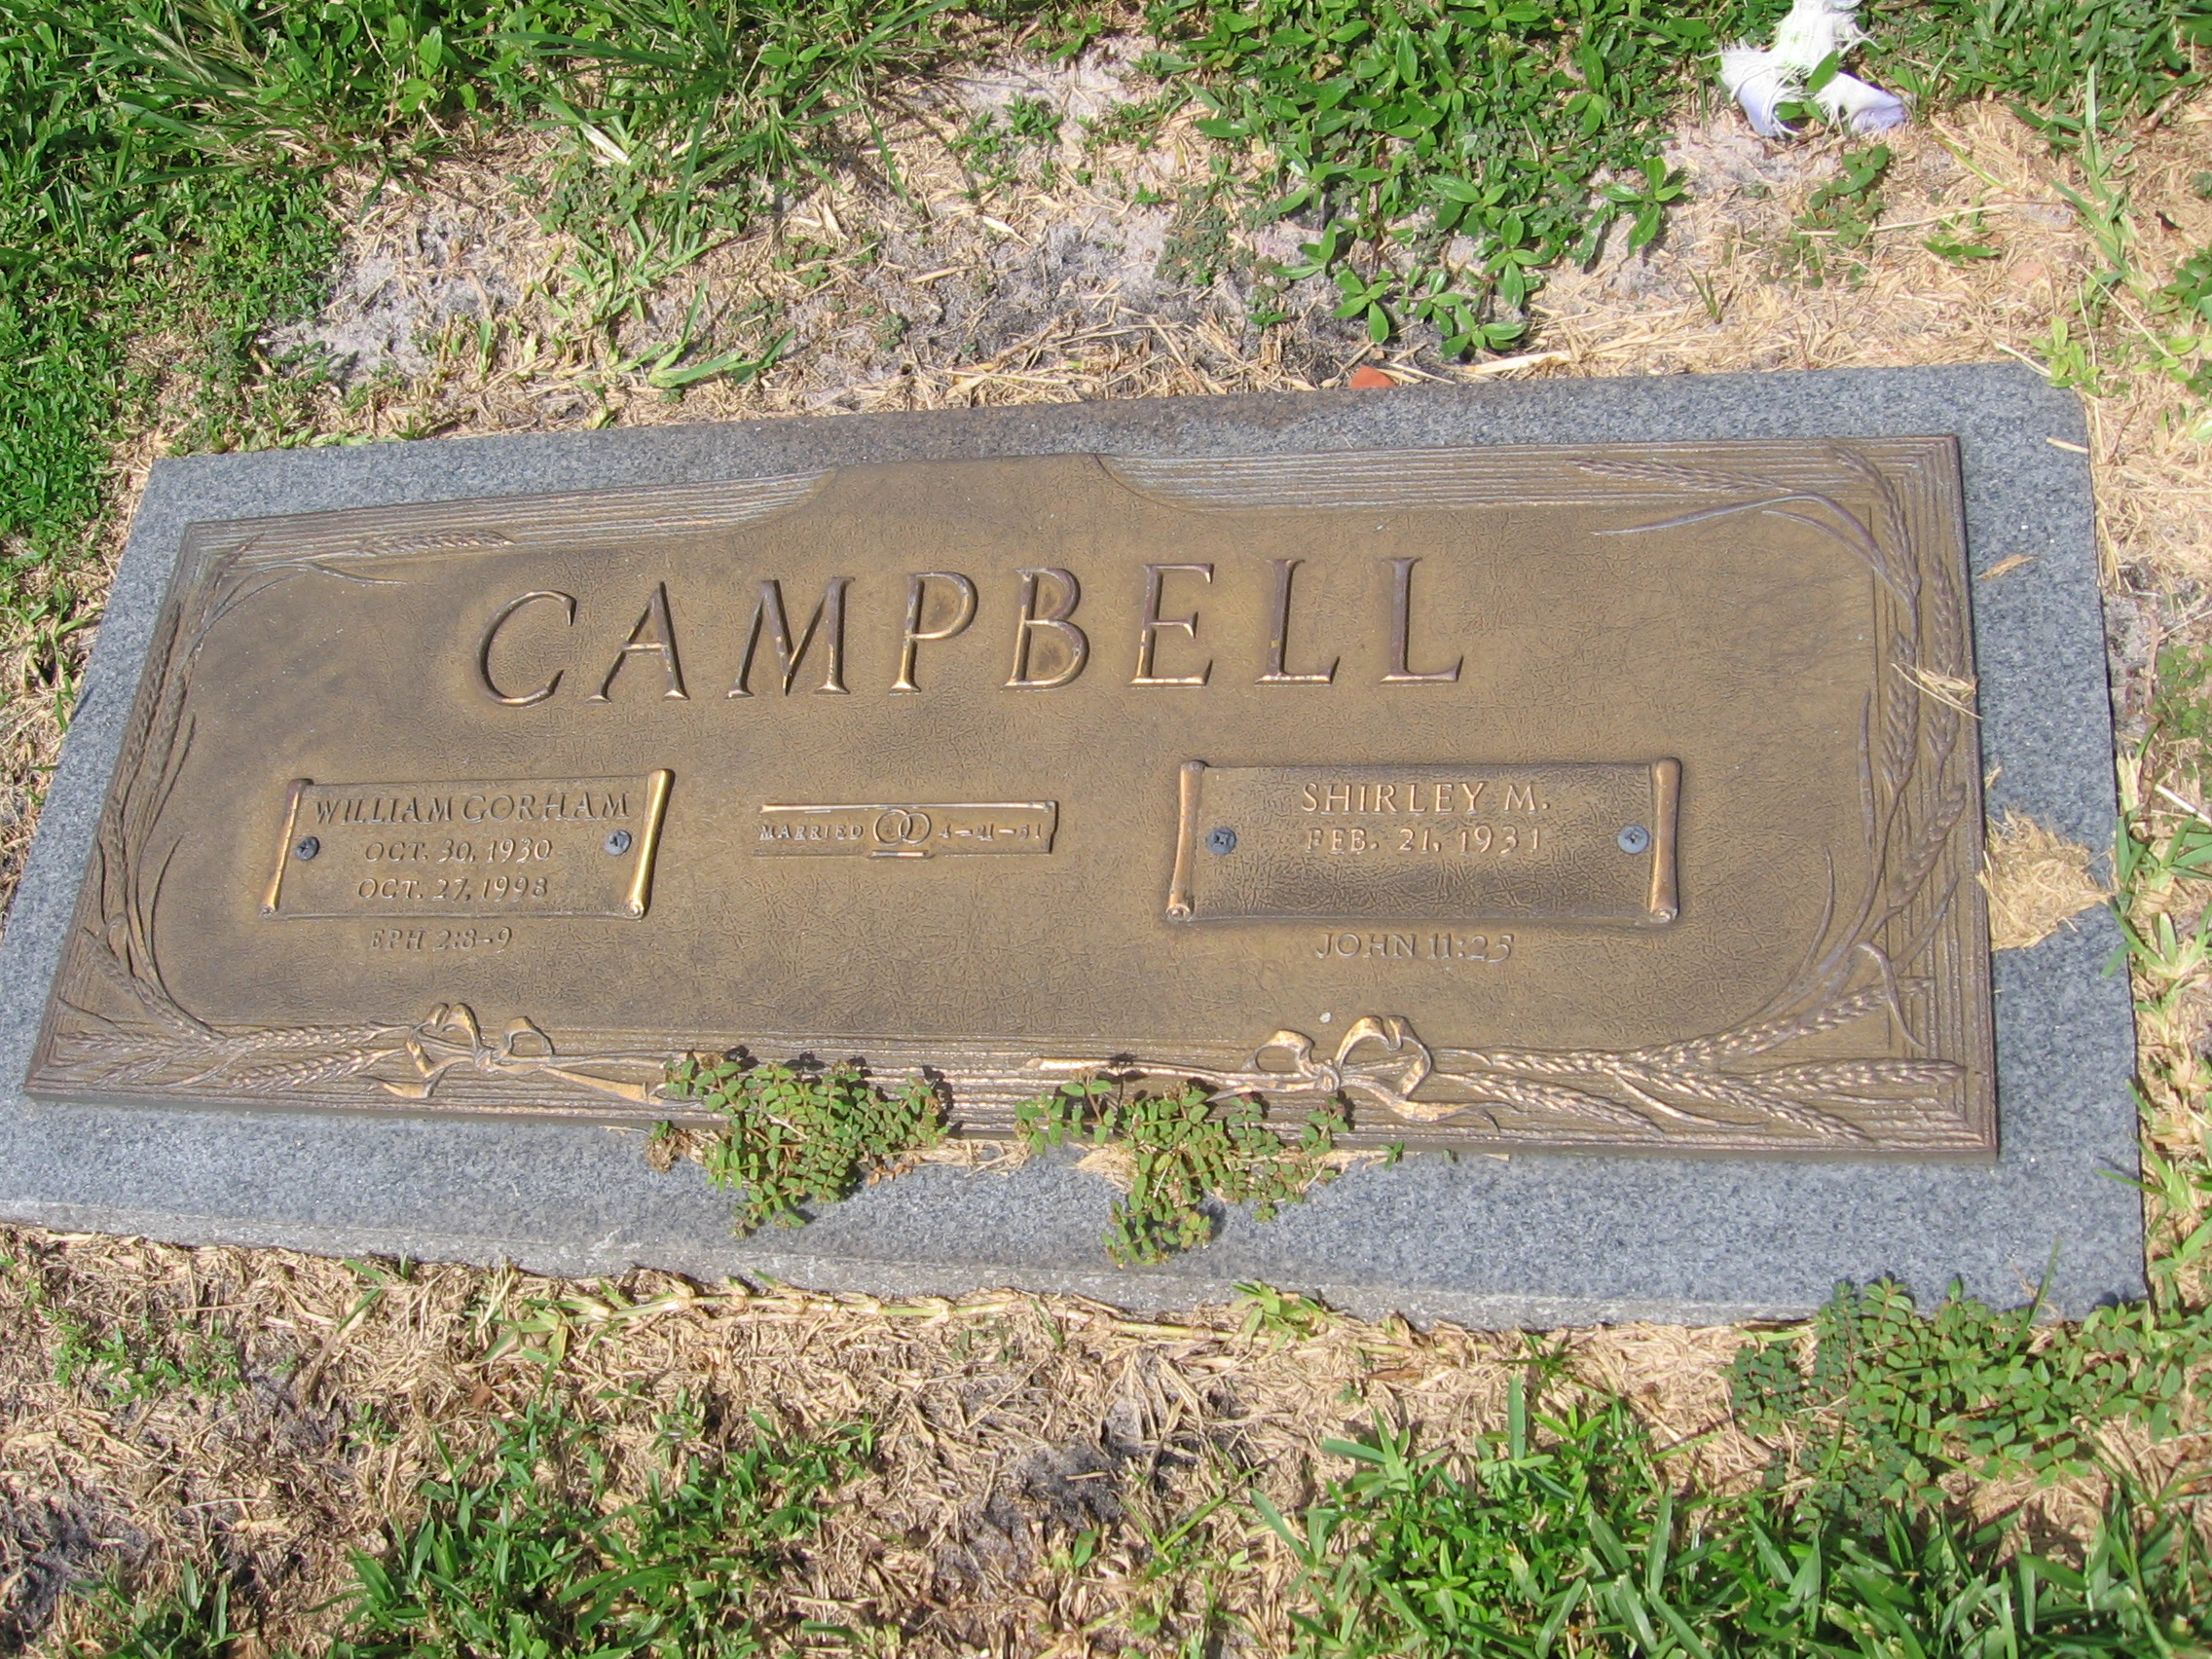 William Corham Campbell